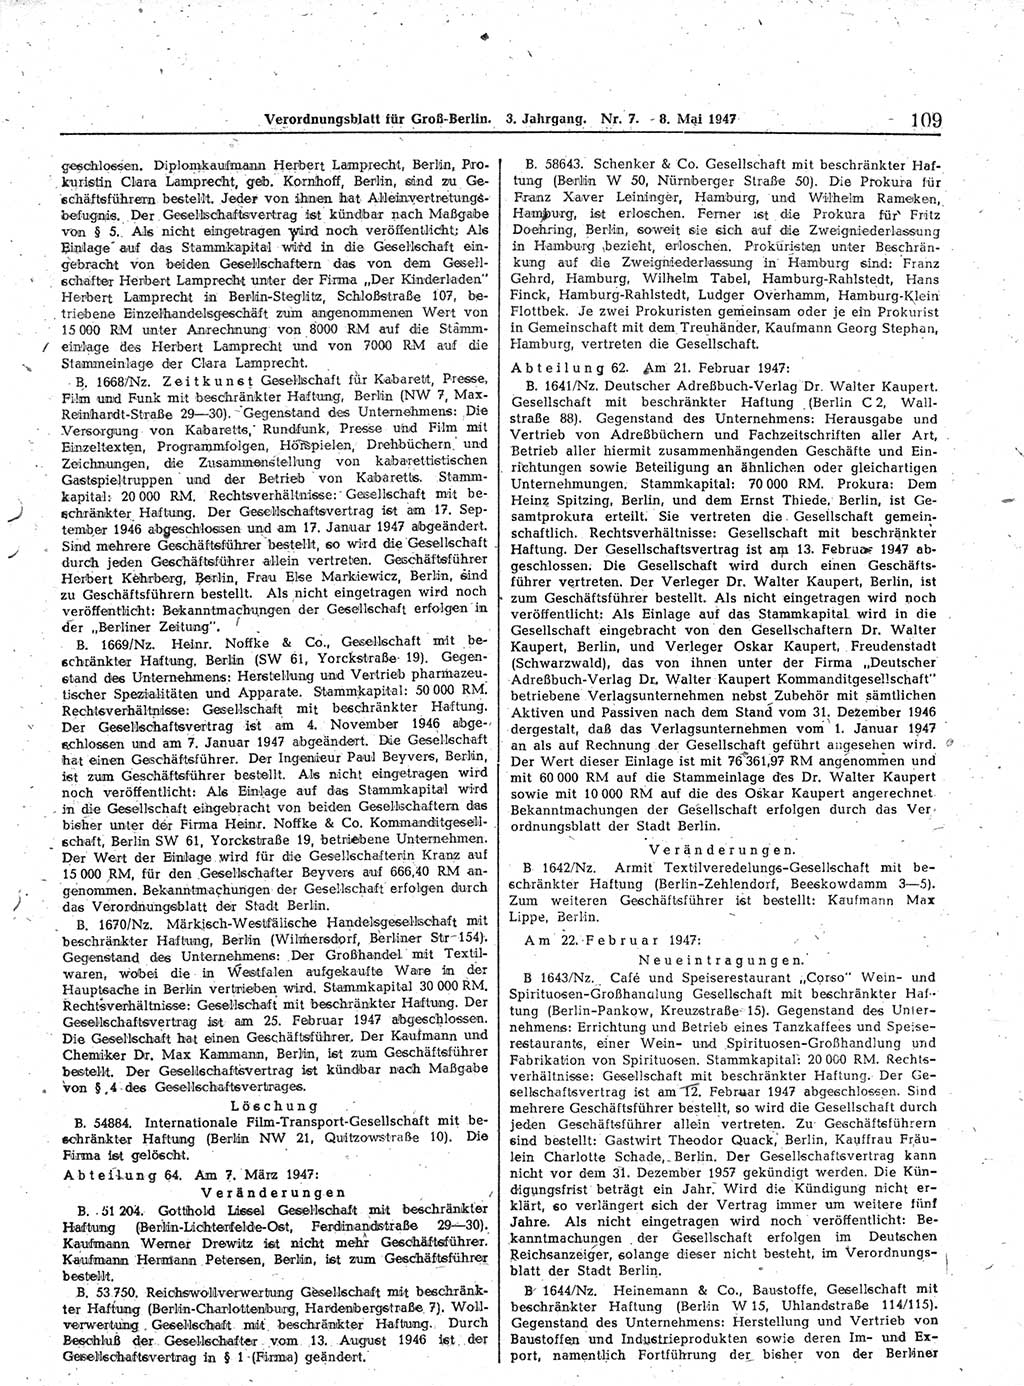 Verordnungsblatt (VOBl.) für Groß-Berlin 1947, Seite 109 (VOBl. Bln. 1947, S. 109)